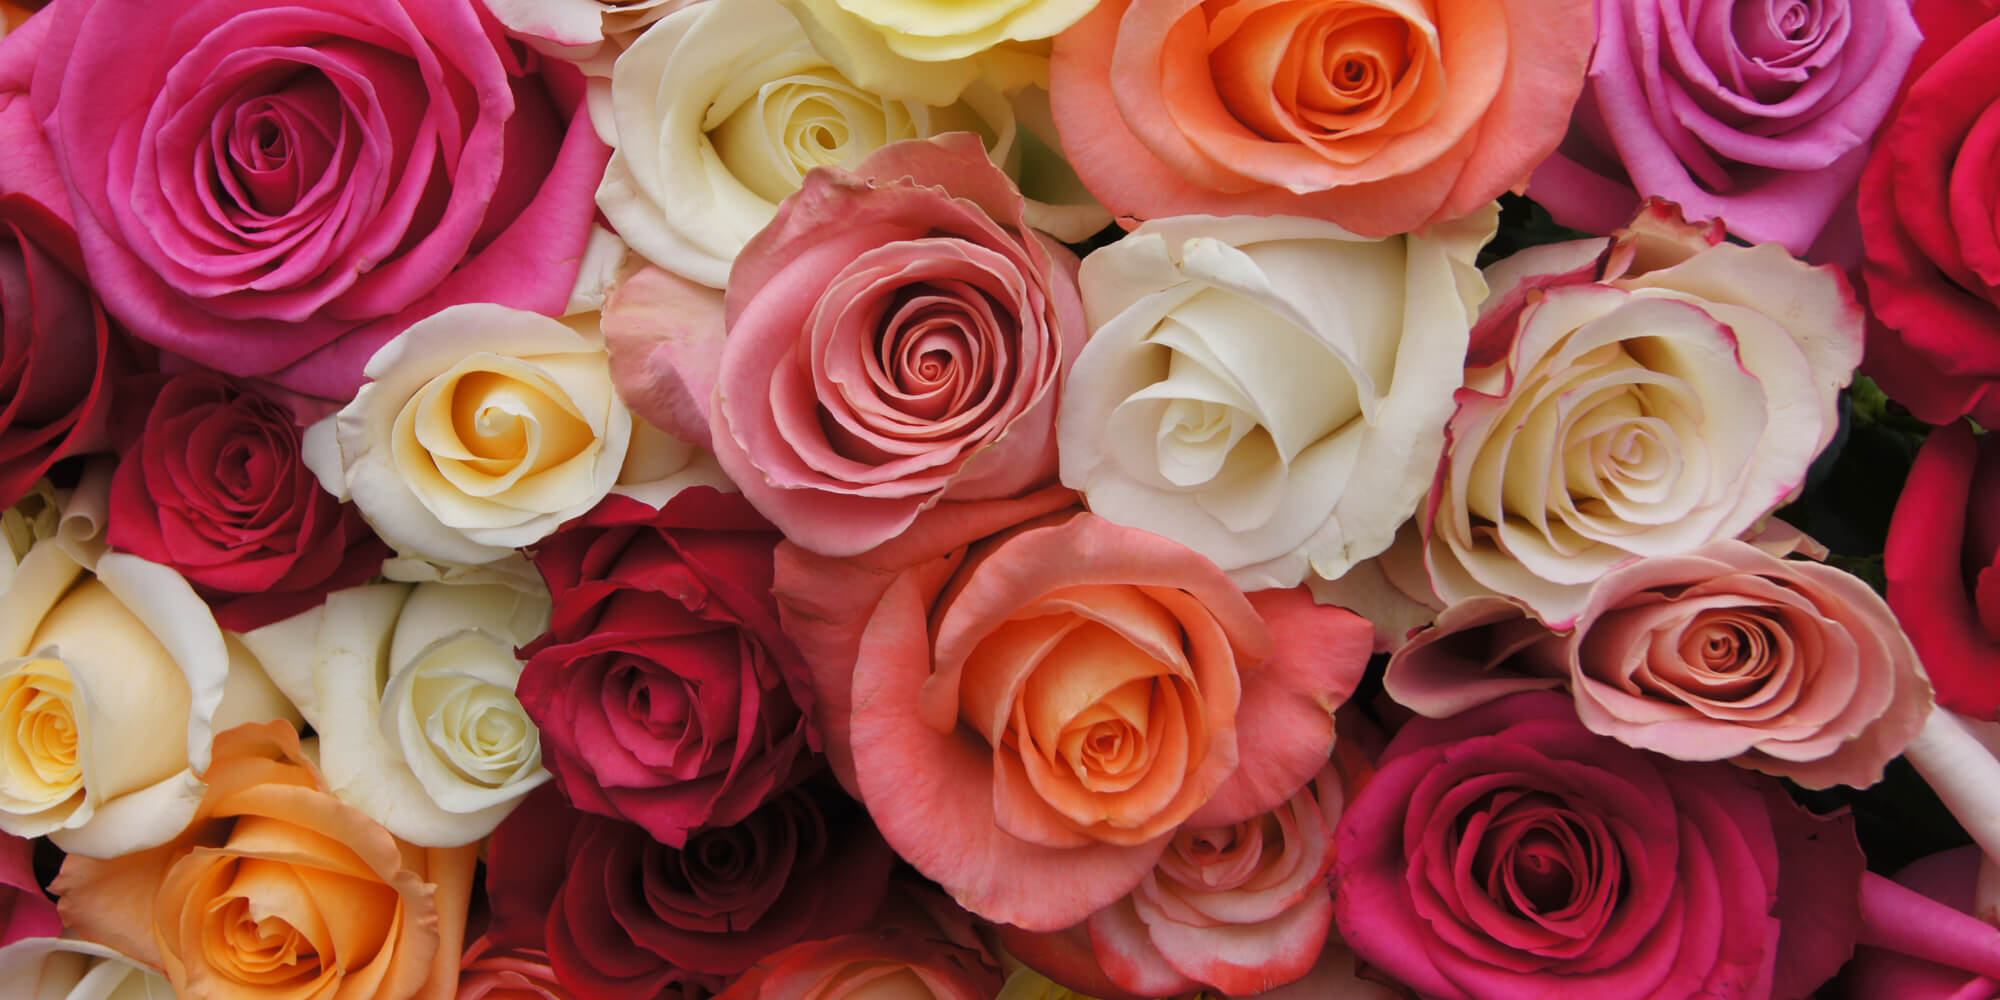 Productores de rosas garantizan abasto de flores para este día del amor | El Imparcial de Oaxaca